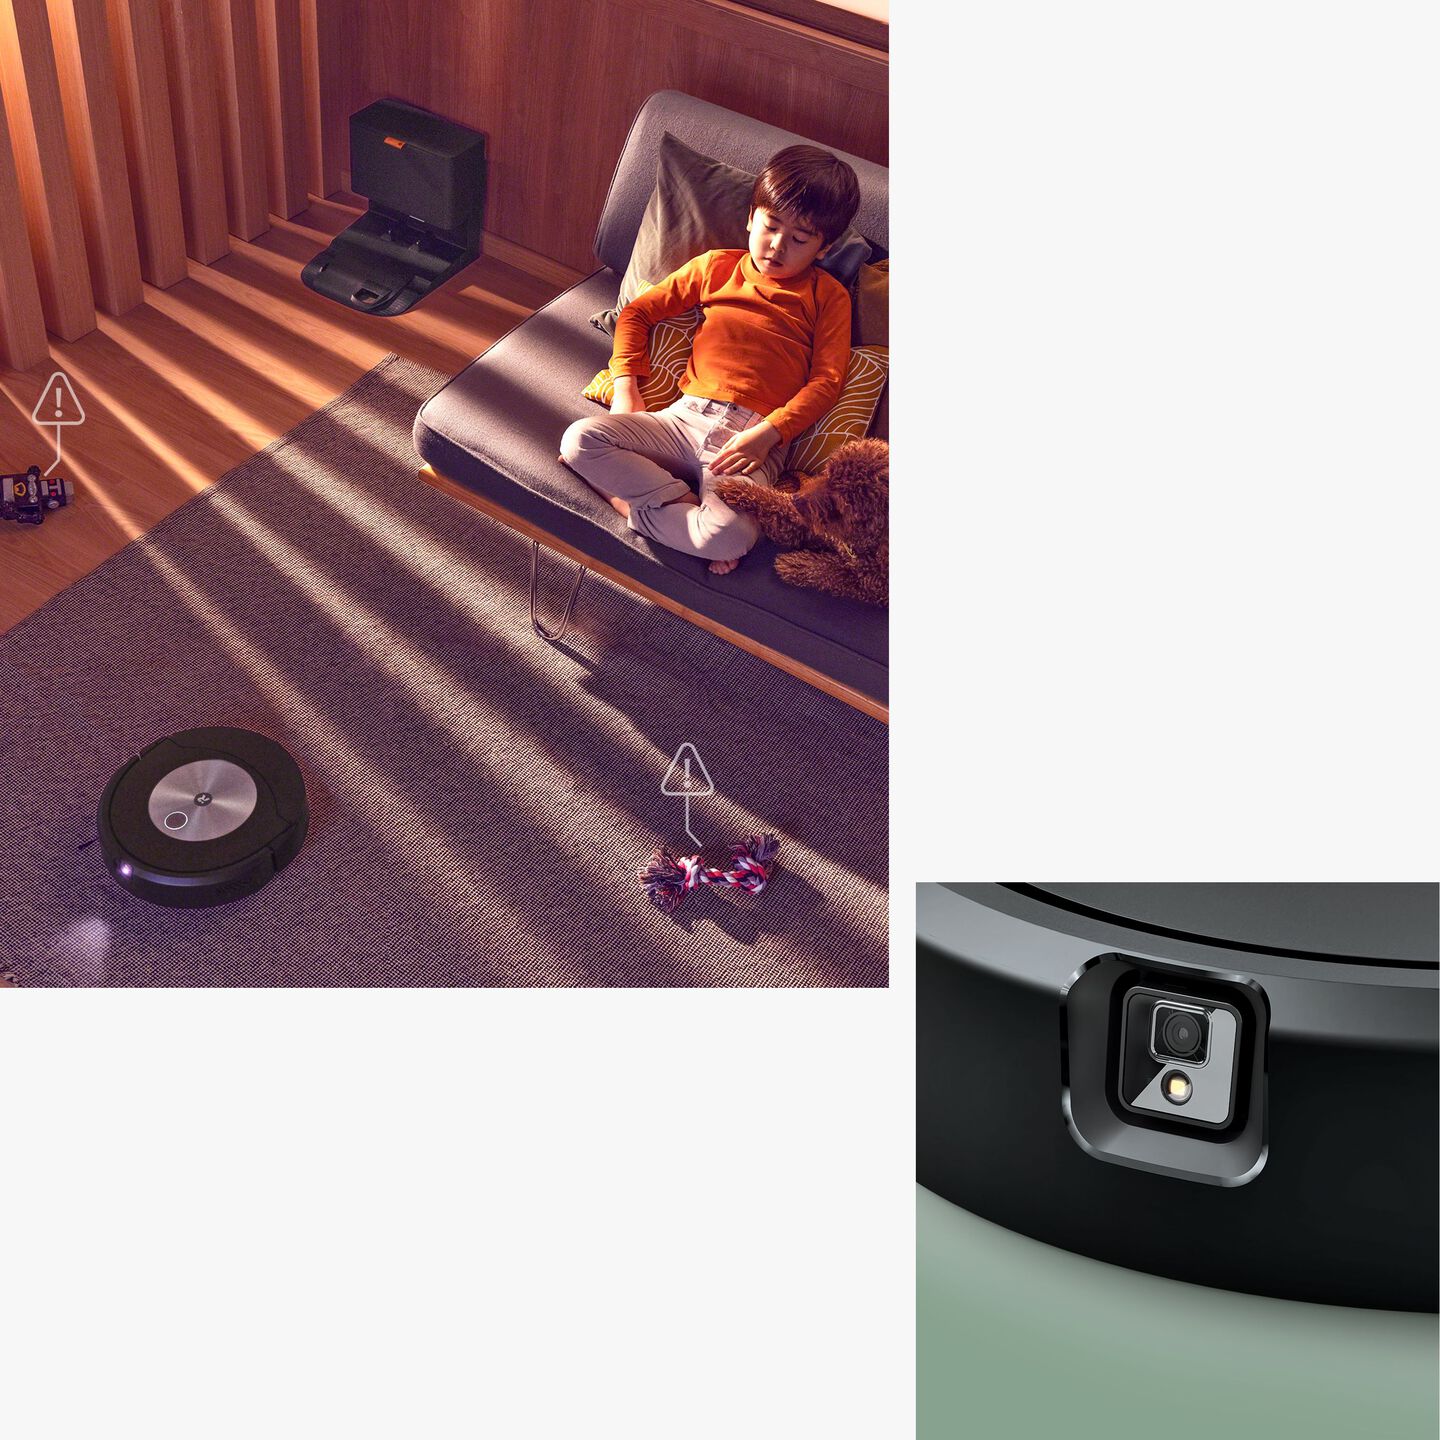 O Roomba Combo j7+ e um rapaz